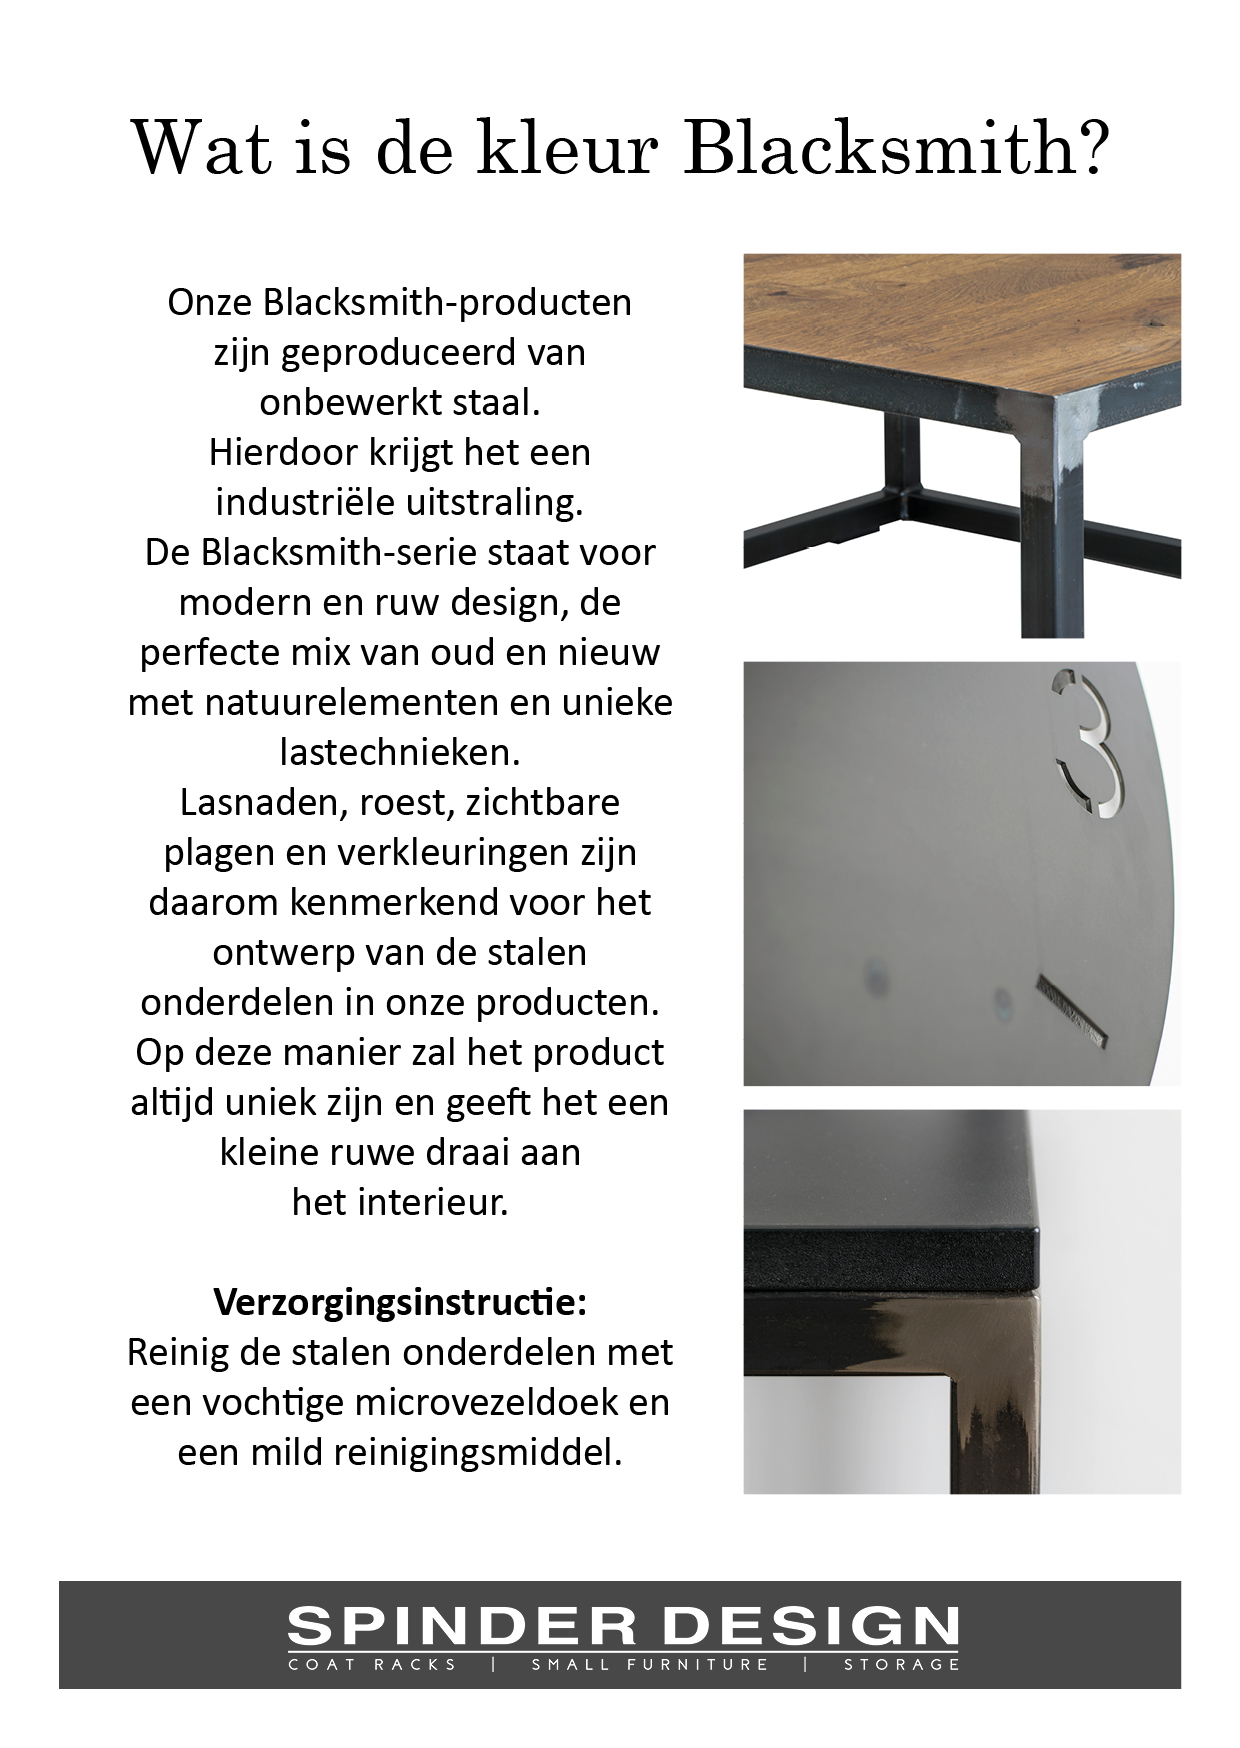 https://www.fundesign.nl/media/catalog/product/b/l/blacksmith_informatie_48.jpg